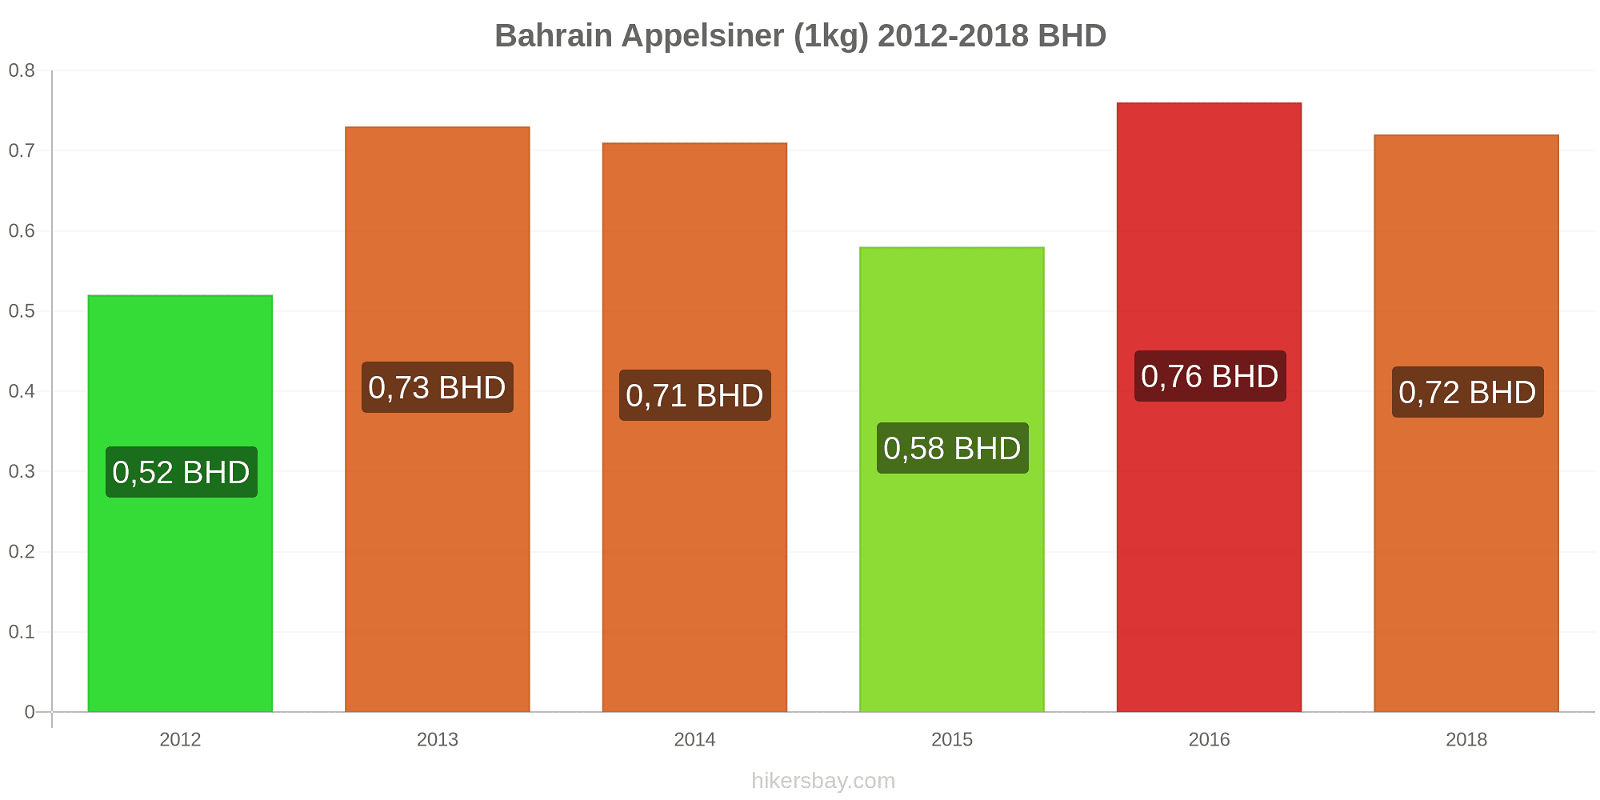 Bahrain prisændringer Appelsiner (1kg) hikersbay.com